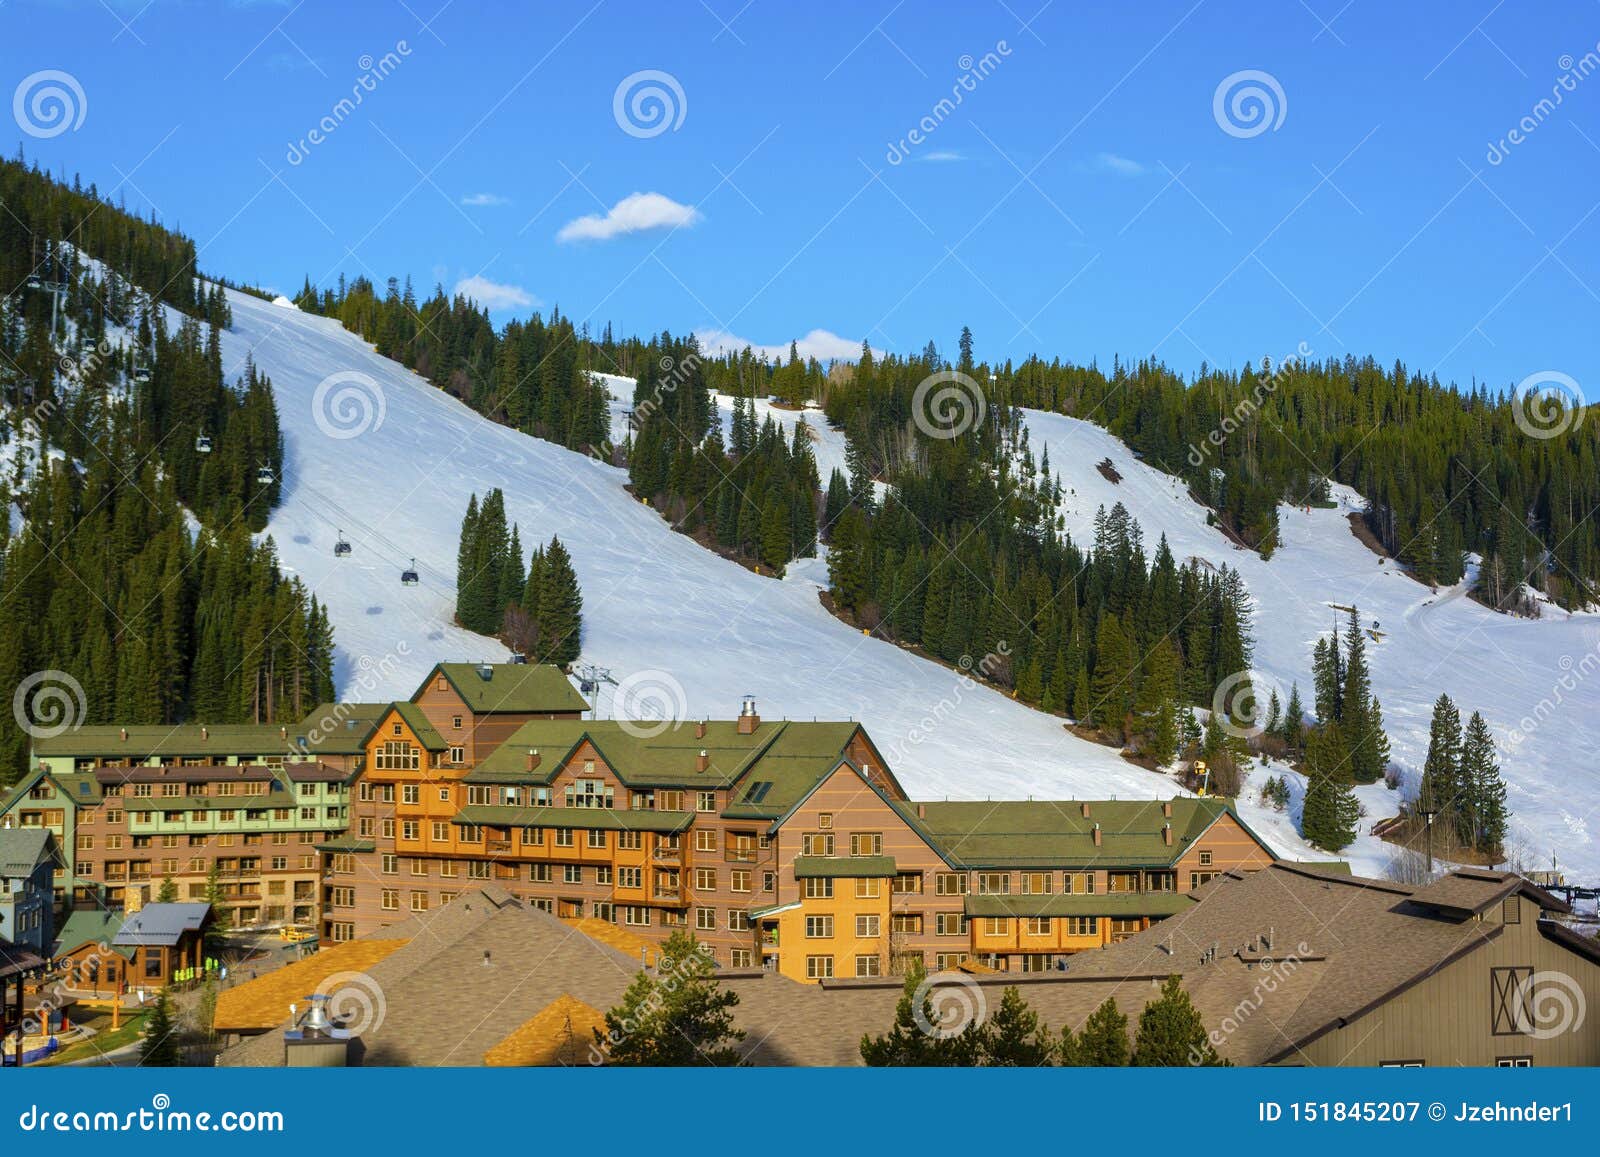 winter park ski area in the colorado rockies